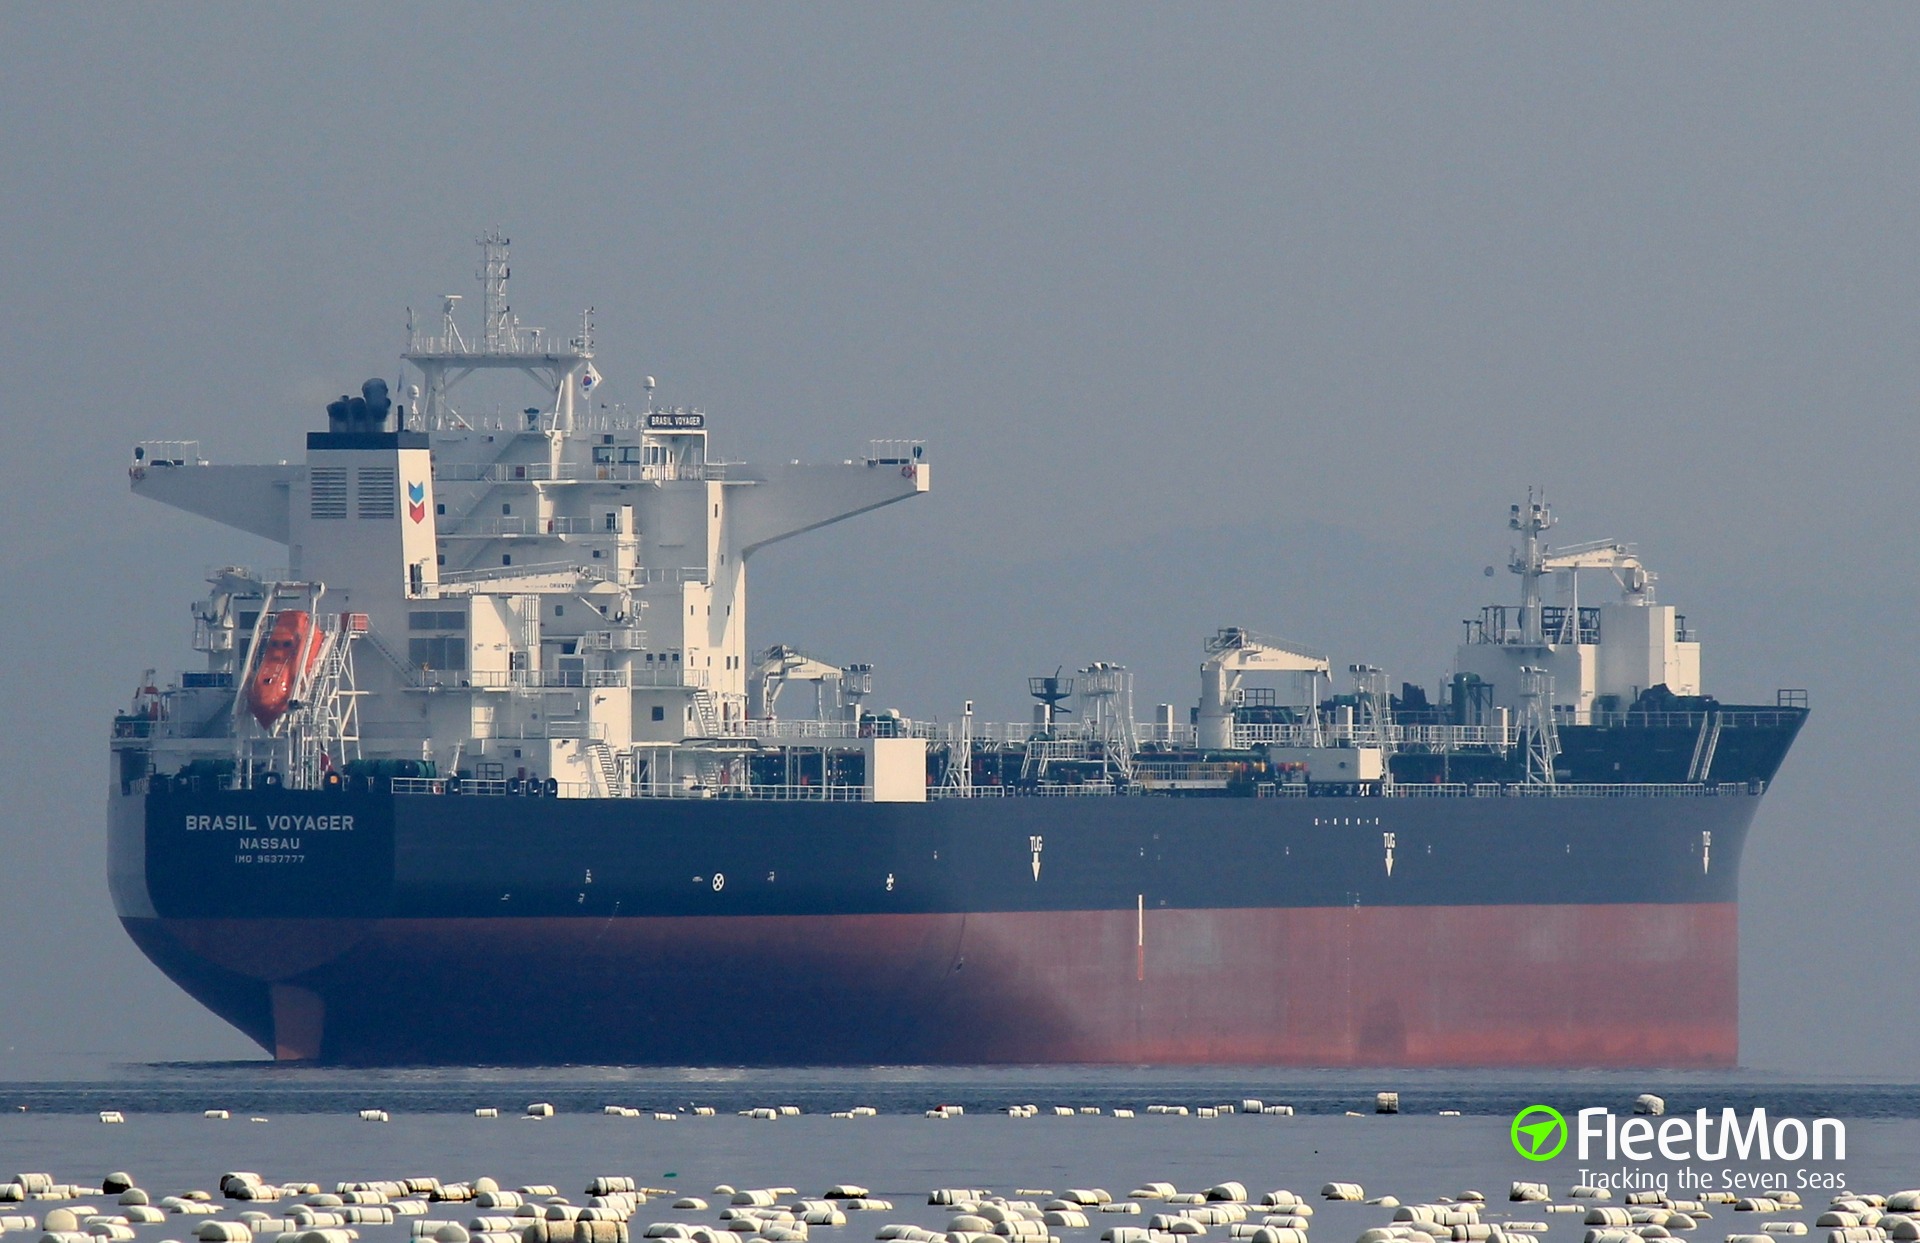 BRASIL KNUTSEN, Shuttle tanker, IMO 9637777, Vessel details